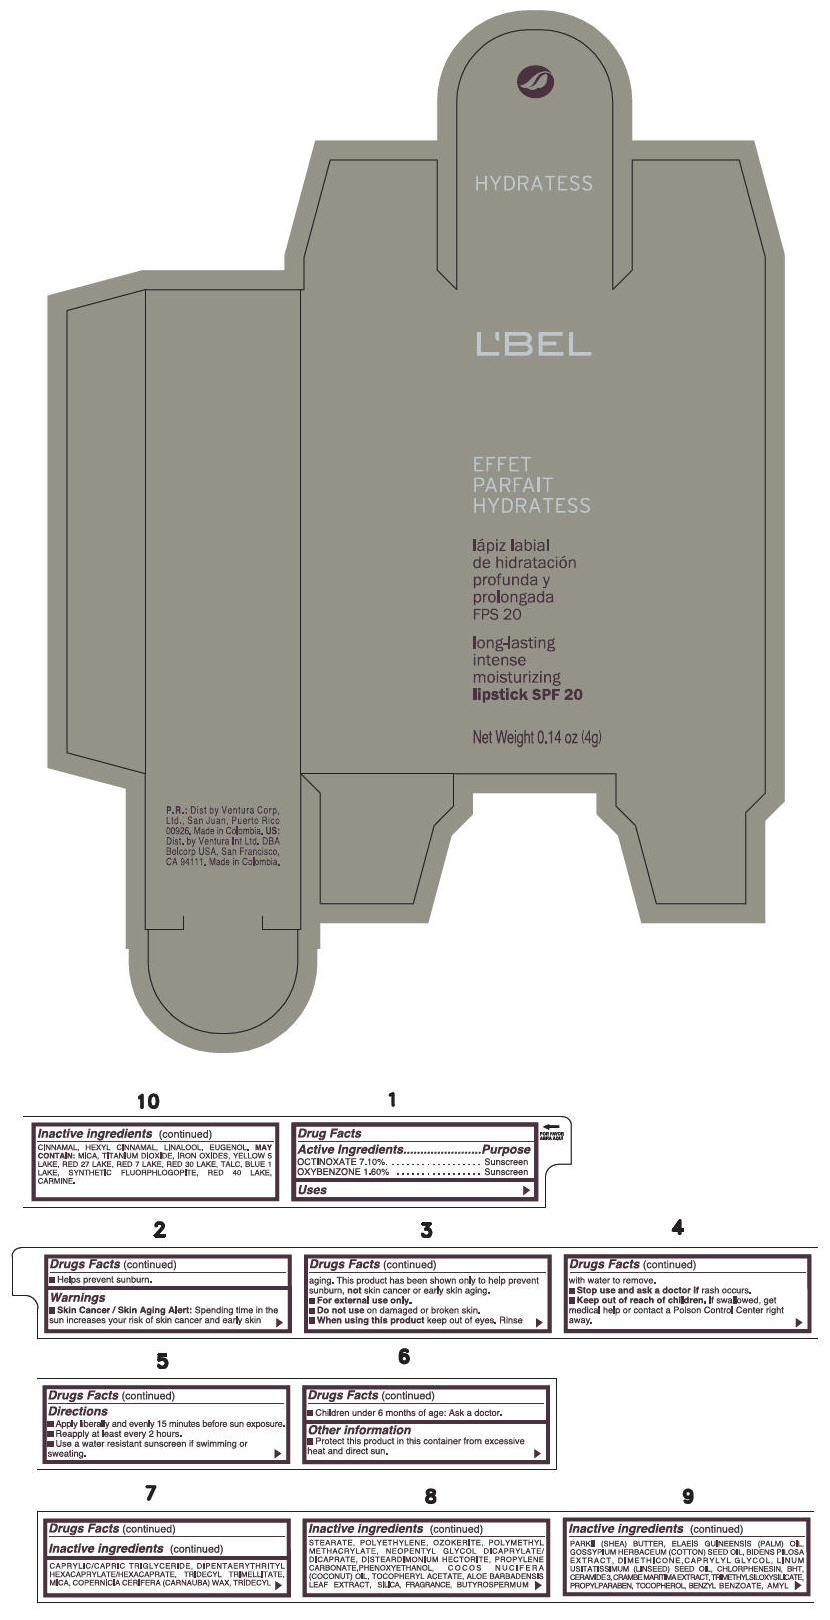 PRINCIPAL DISPLAY PANEL - 4 g Tube Box - (MALVE) - BROWN